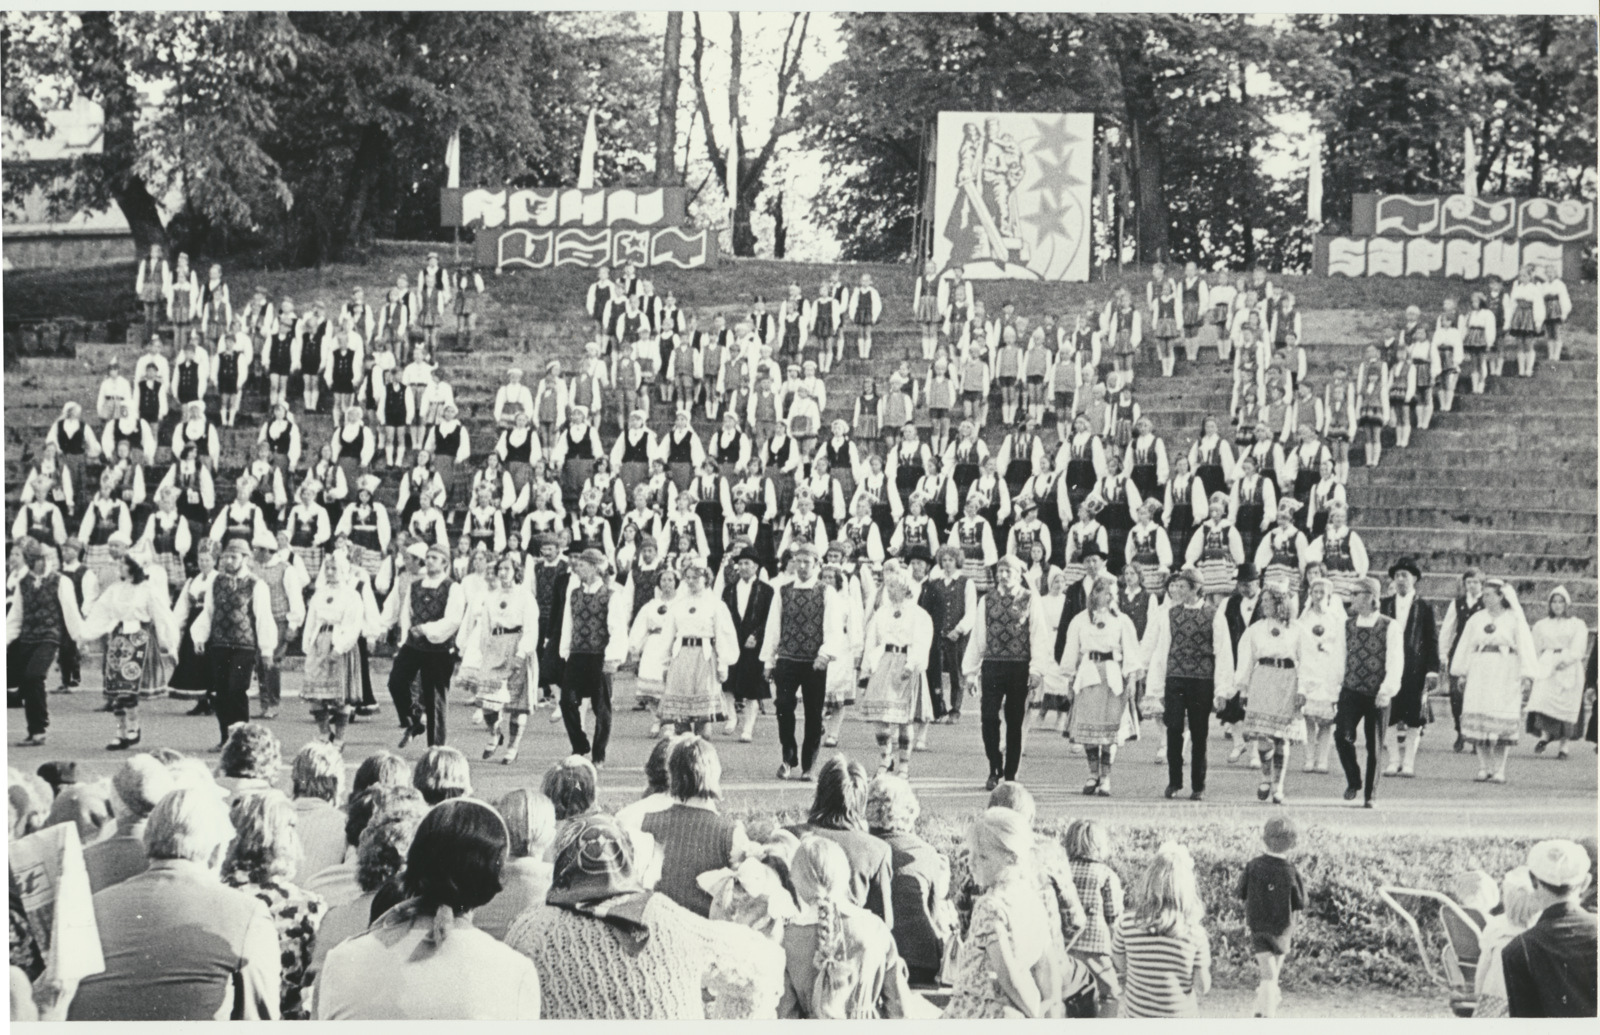 foto, Viljandi rajooni laulu- ja tantsupidu, laululava, tantsijad, 1975, foto B. Veidebaum